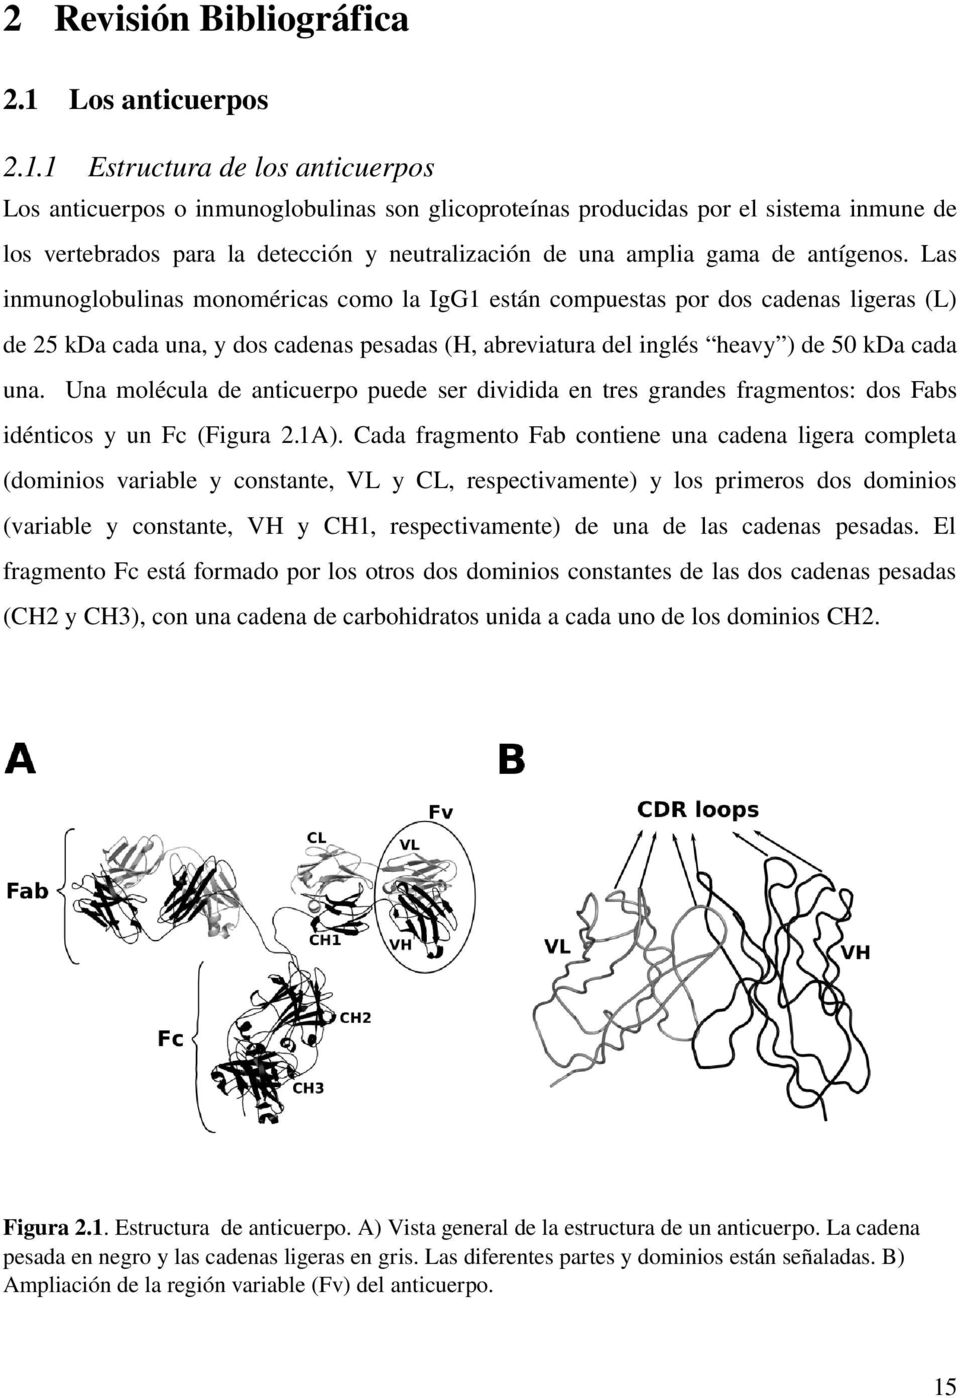 1 Estructura de los anticuerpos Los anticuerpos o inmunoglobulinas son glicoproteínas producidas por el sistema inmune de los vertebrados para la detección y neutralización de una amplia gama de